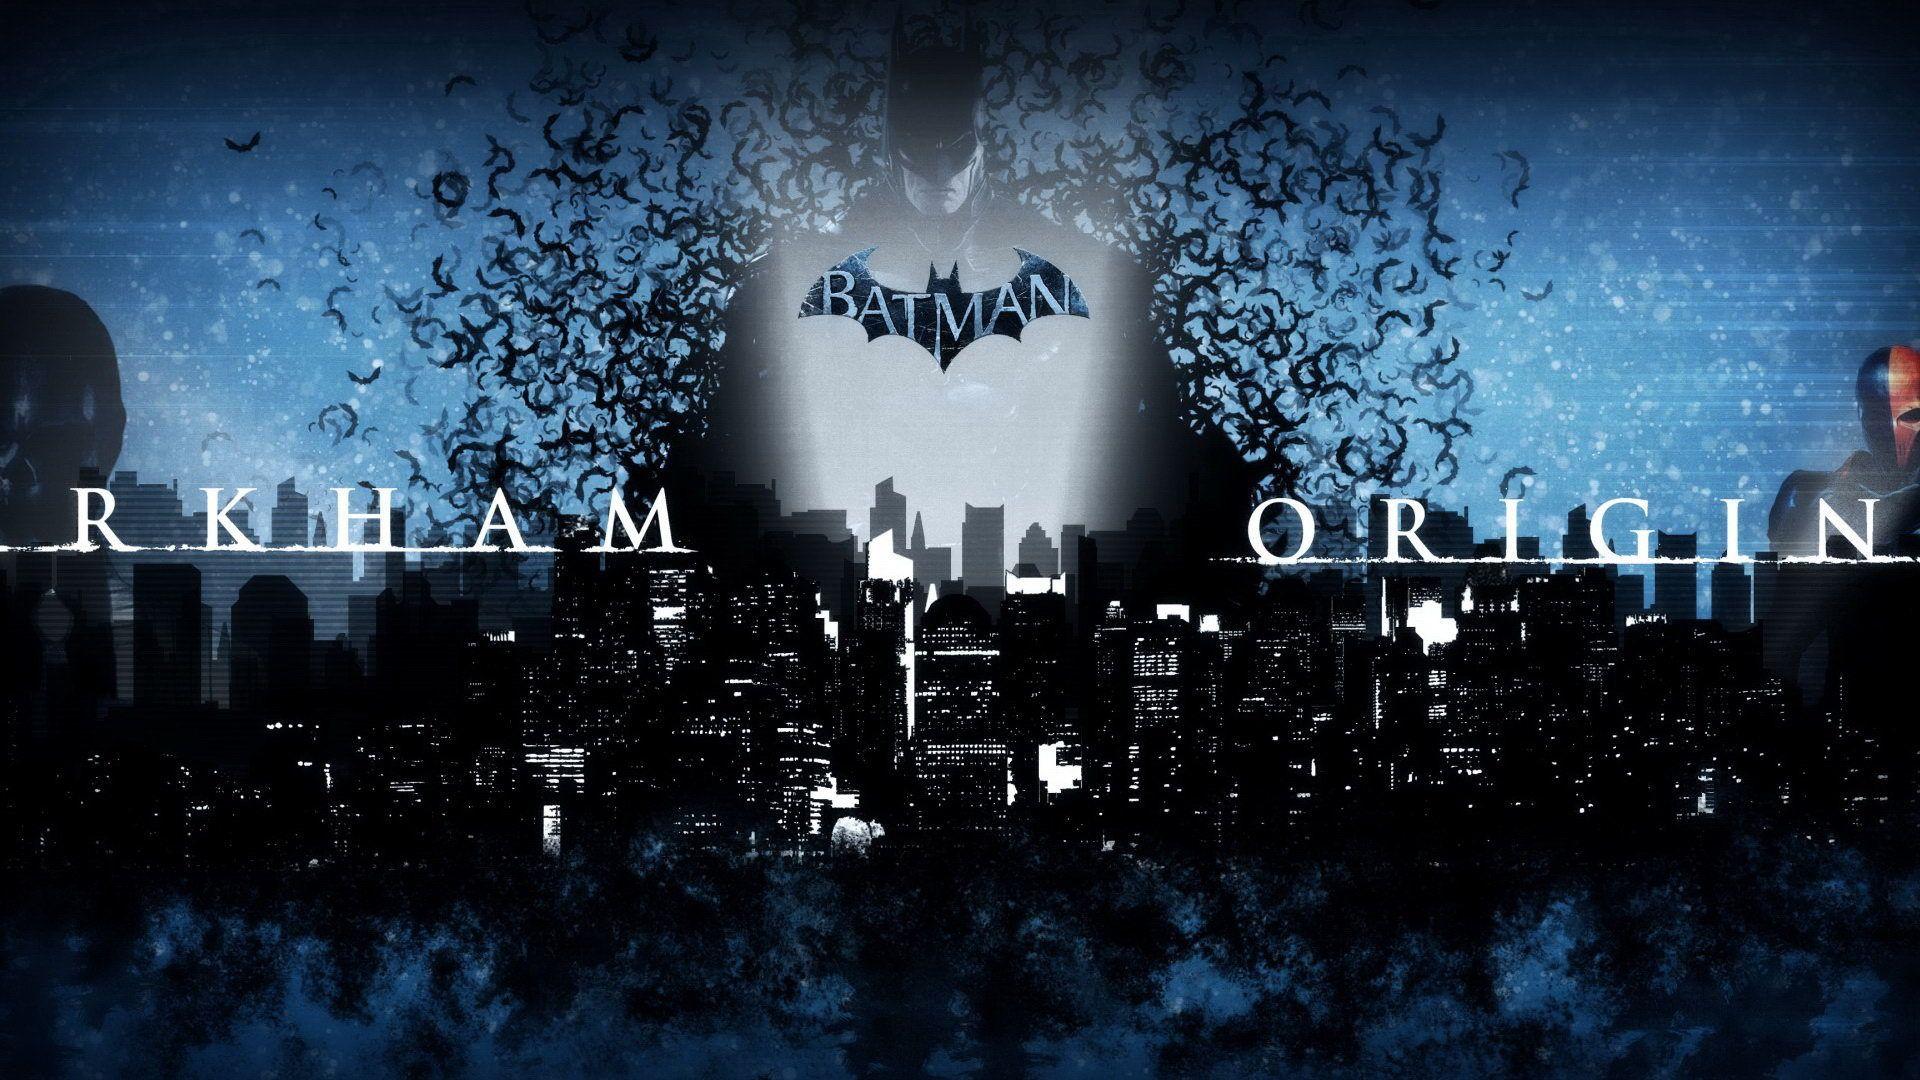 Batman: Arkham Origins screensaver hd wallpapers and image